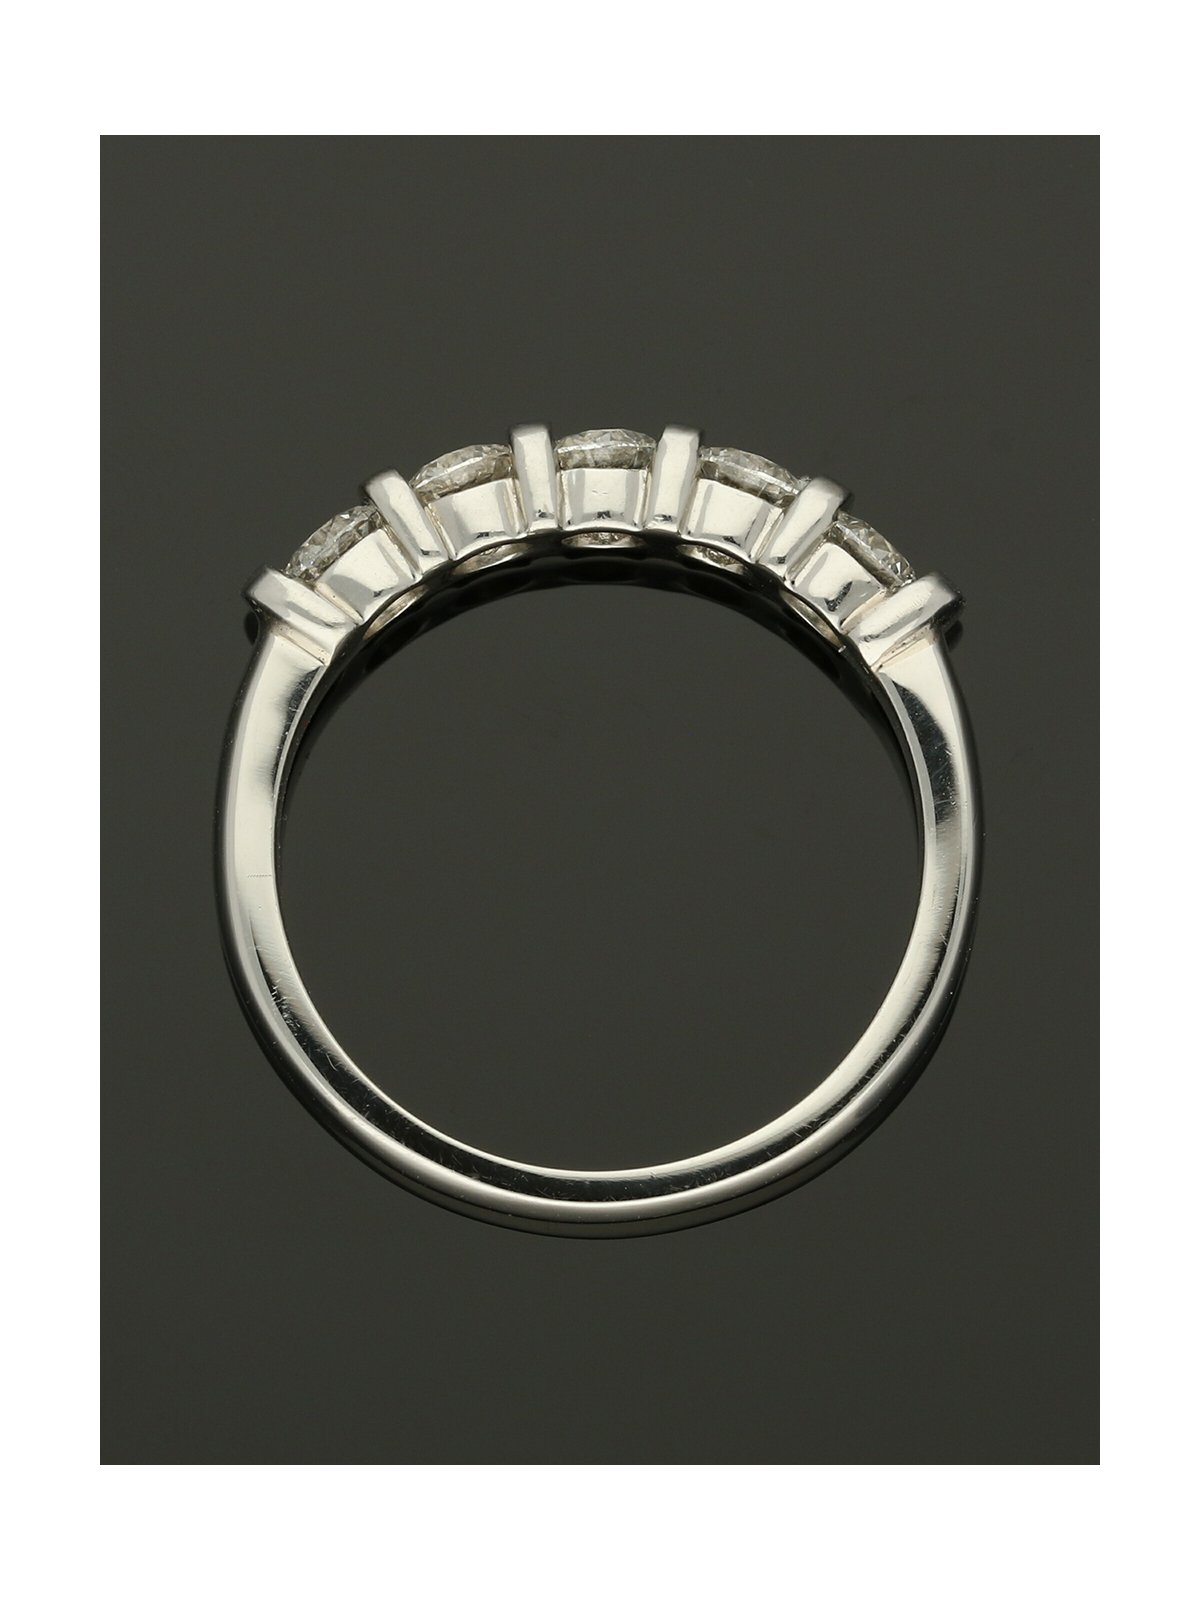 Five Stone Diamond Ring 1.02ct Round Brilliant Cut in Platinum